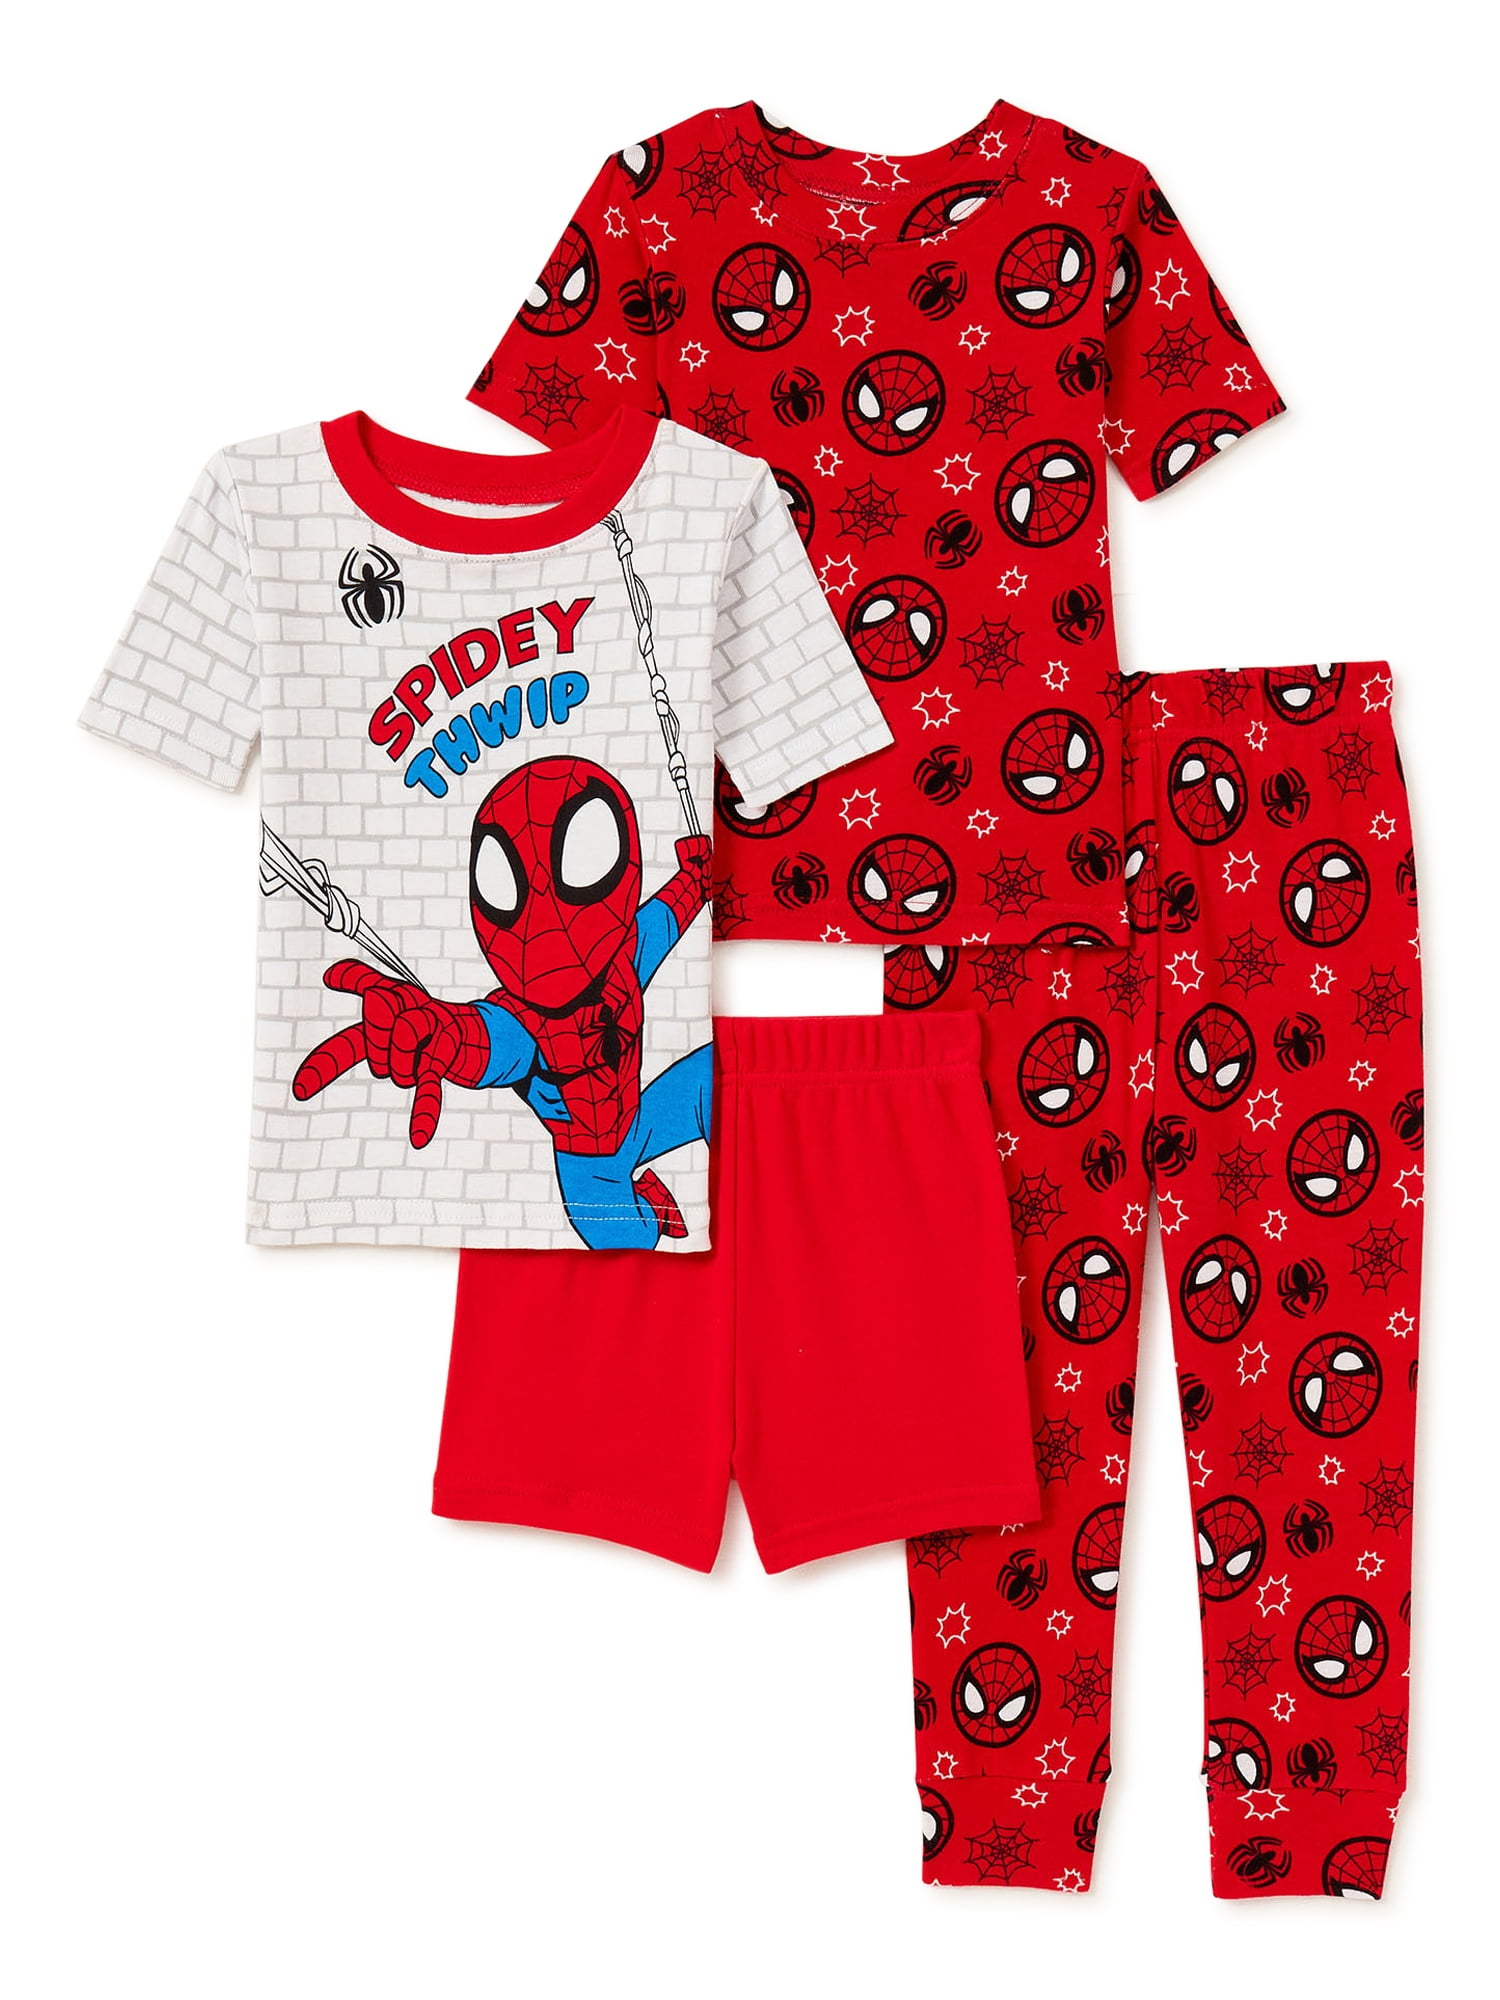 Boys Pajamas Set 100% Cotton Spiderman Kids Short Pjs Summer Toddler Sleepwear